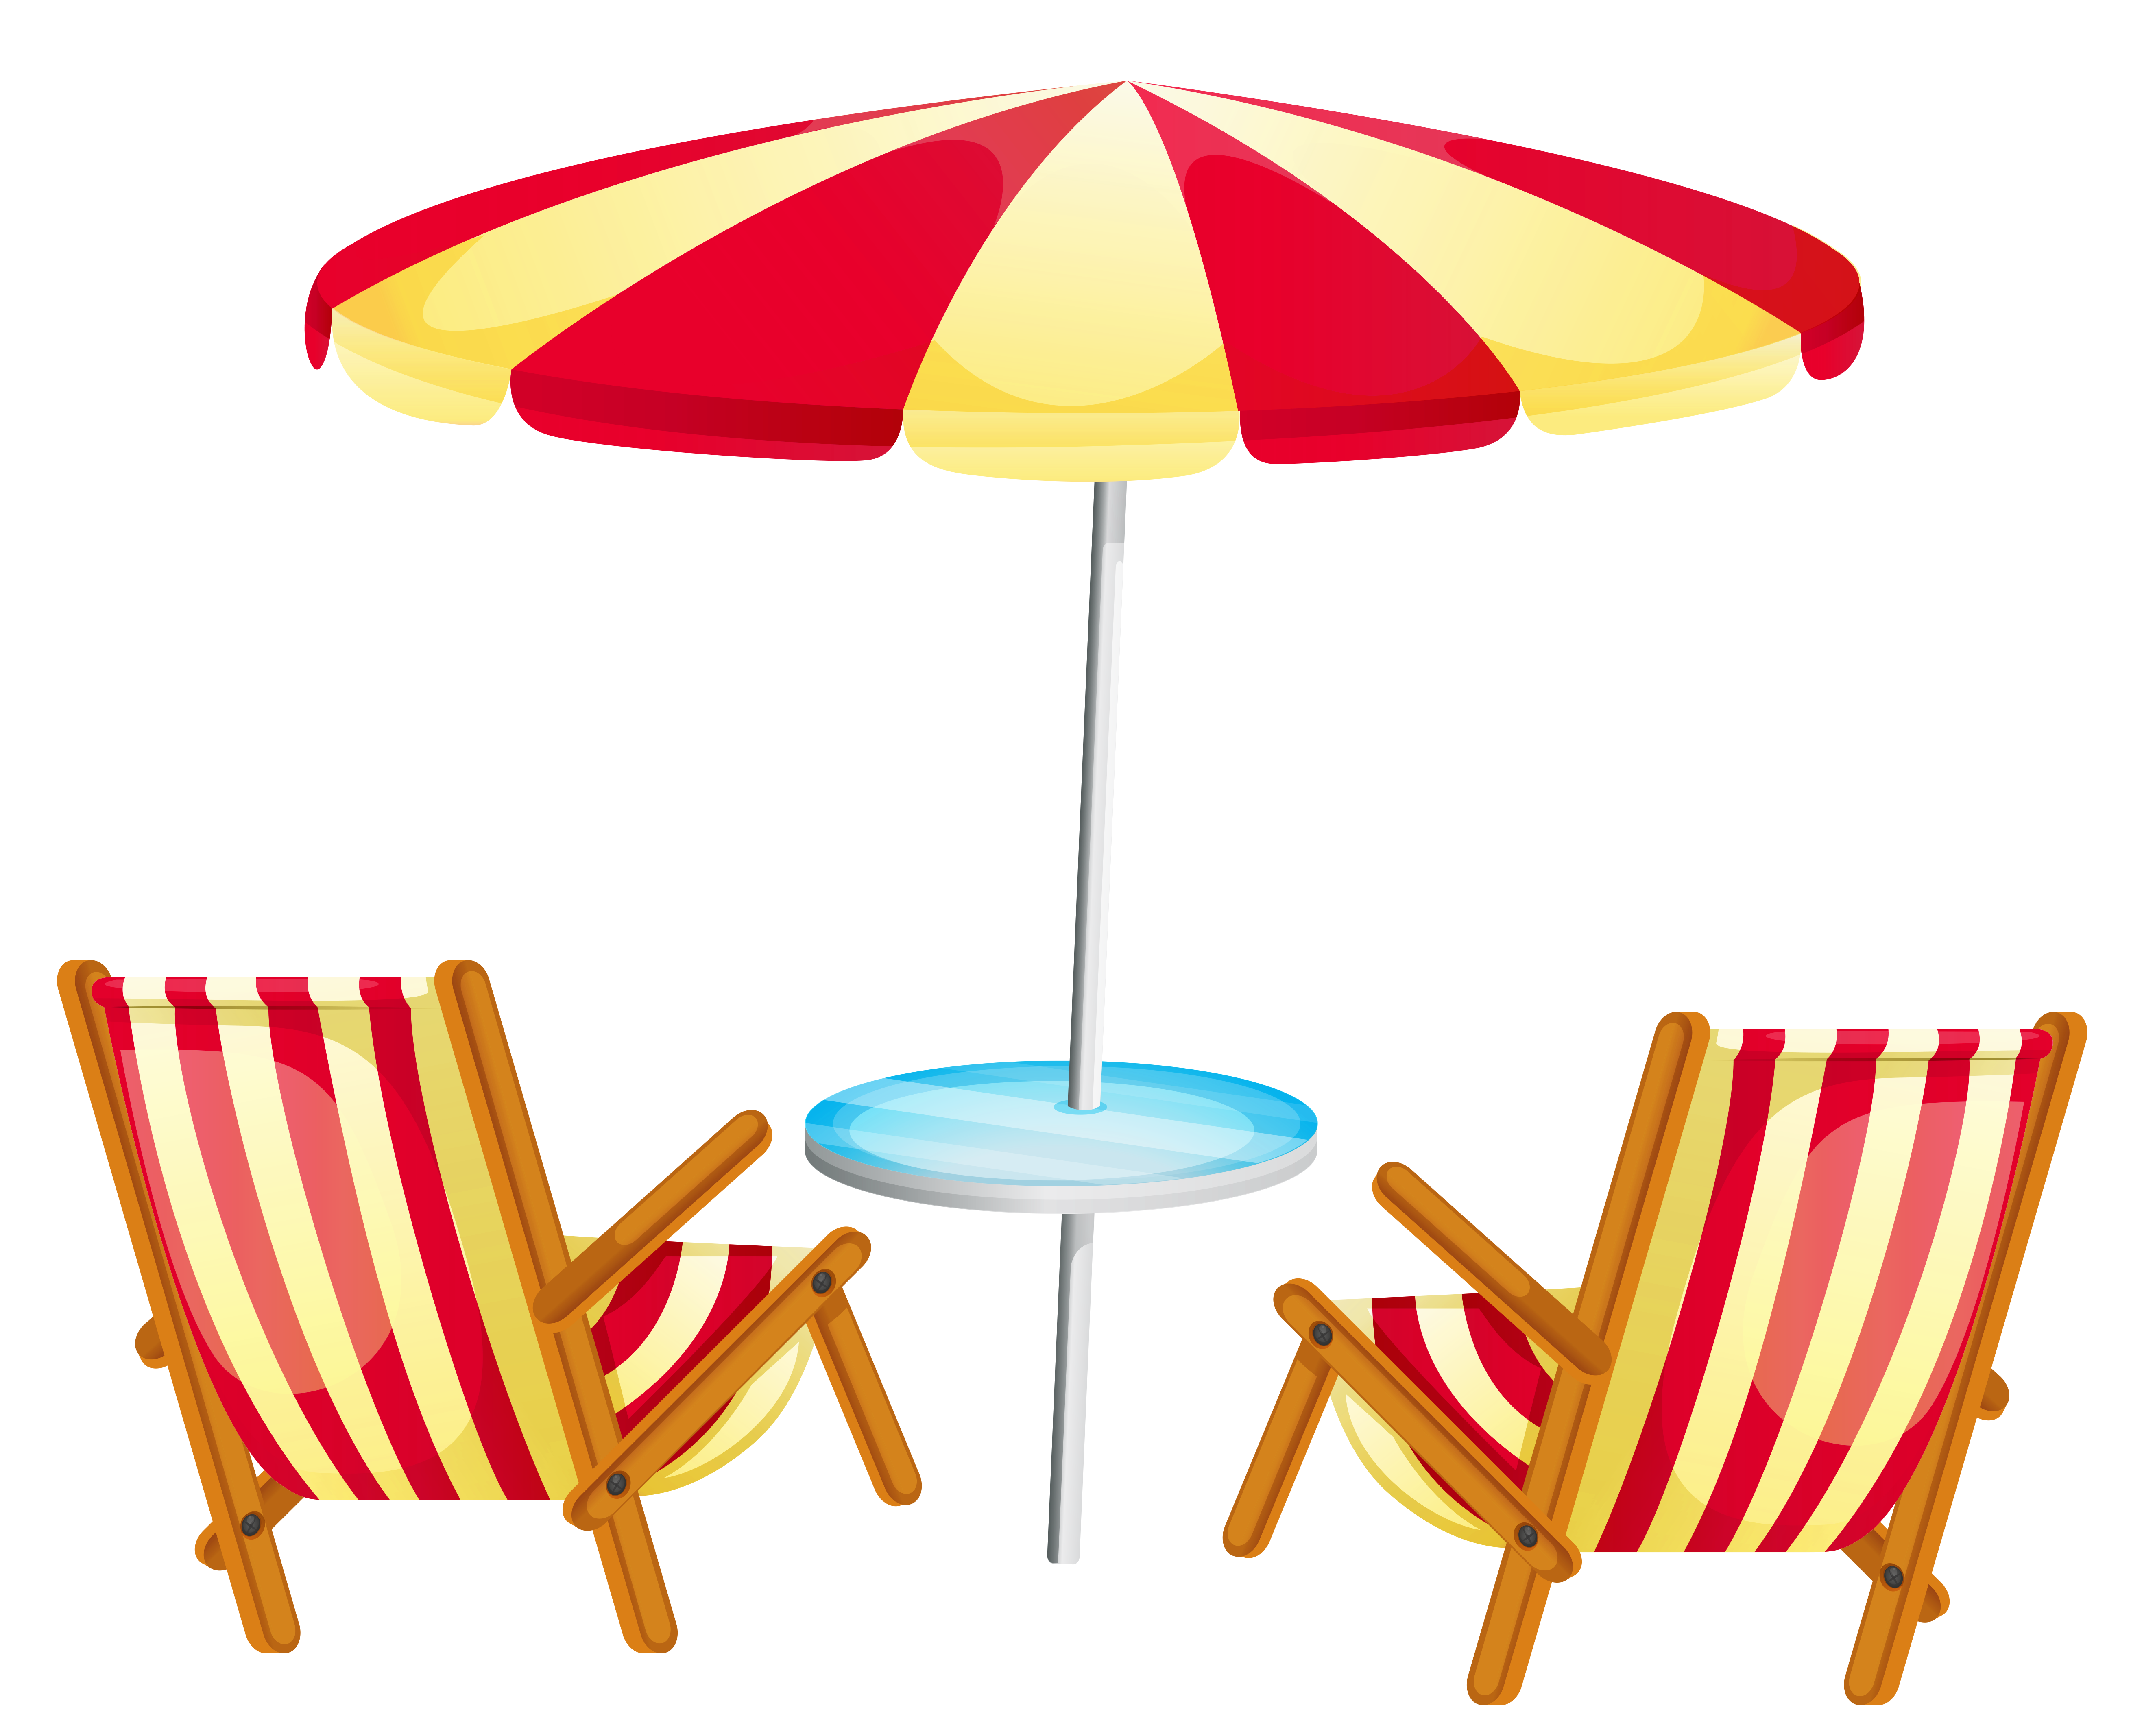 Transparent beach umbrella.